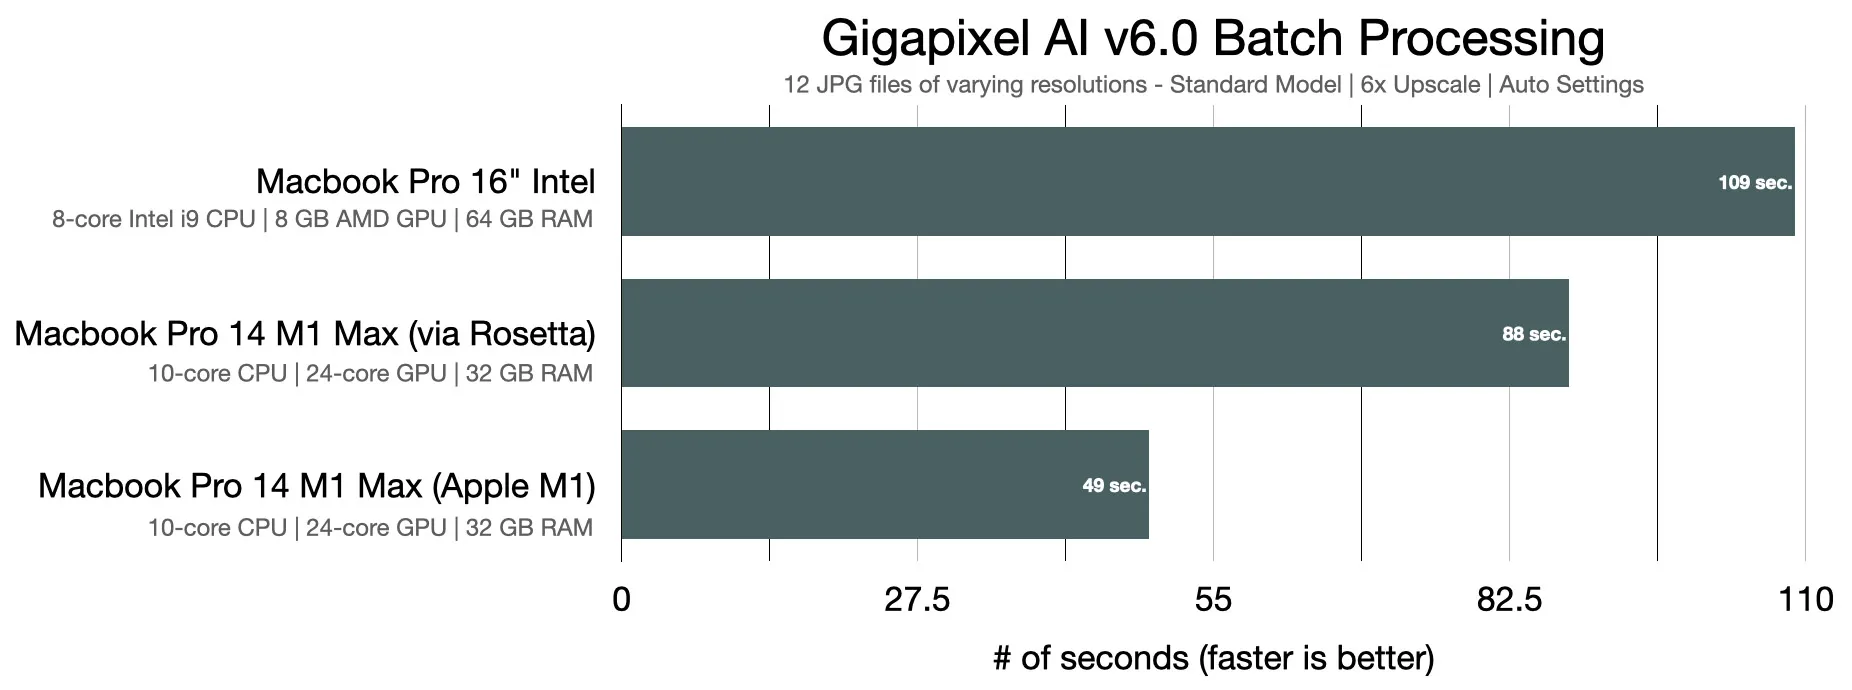 Pruebas de rendimiento en Gigapixel AI versión 6